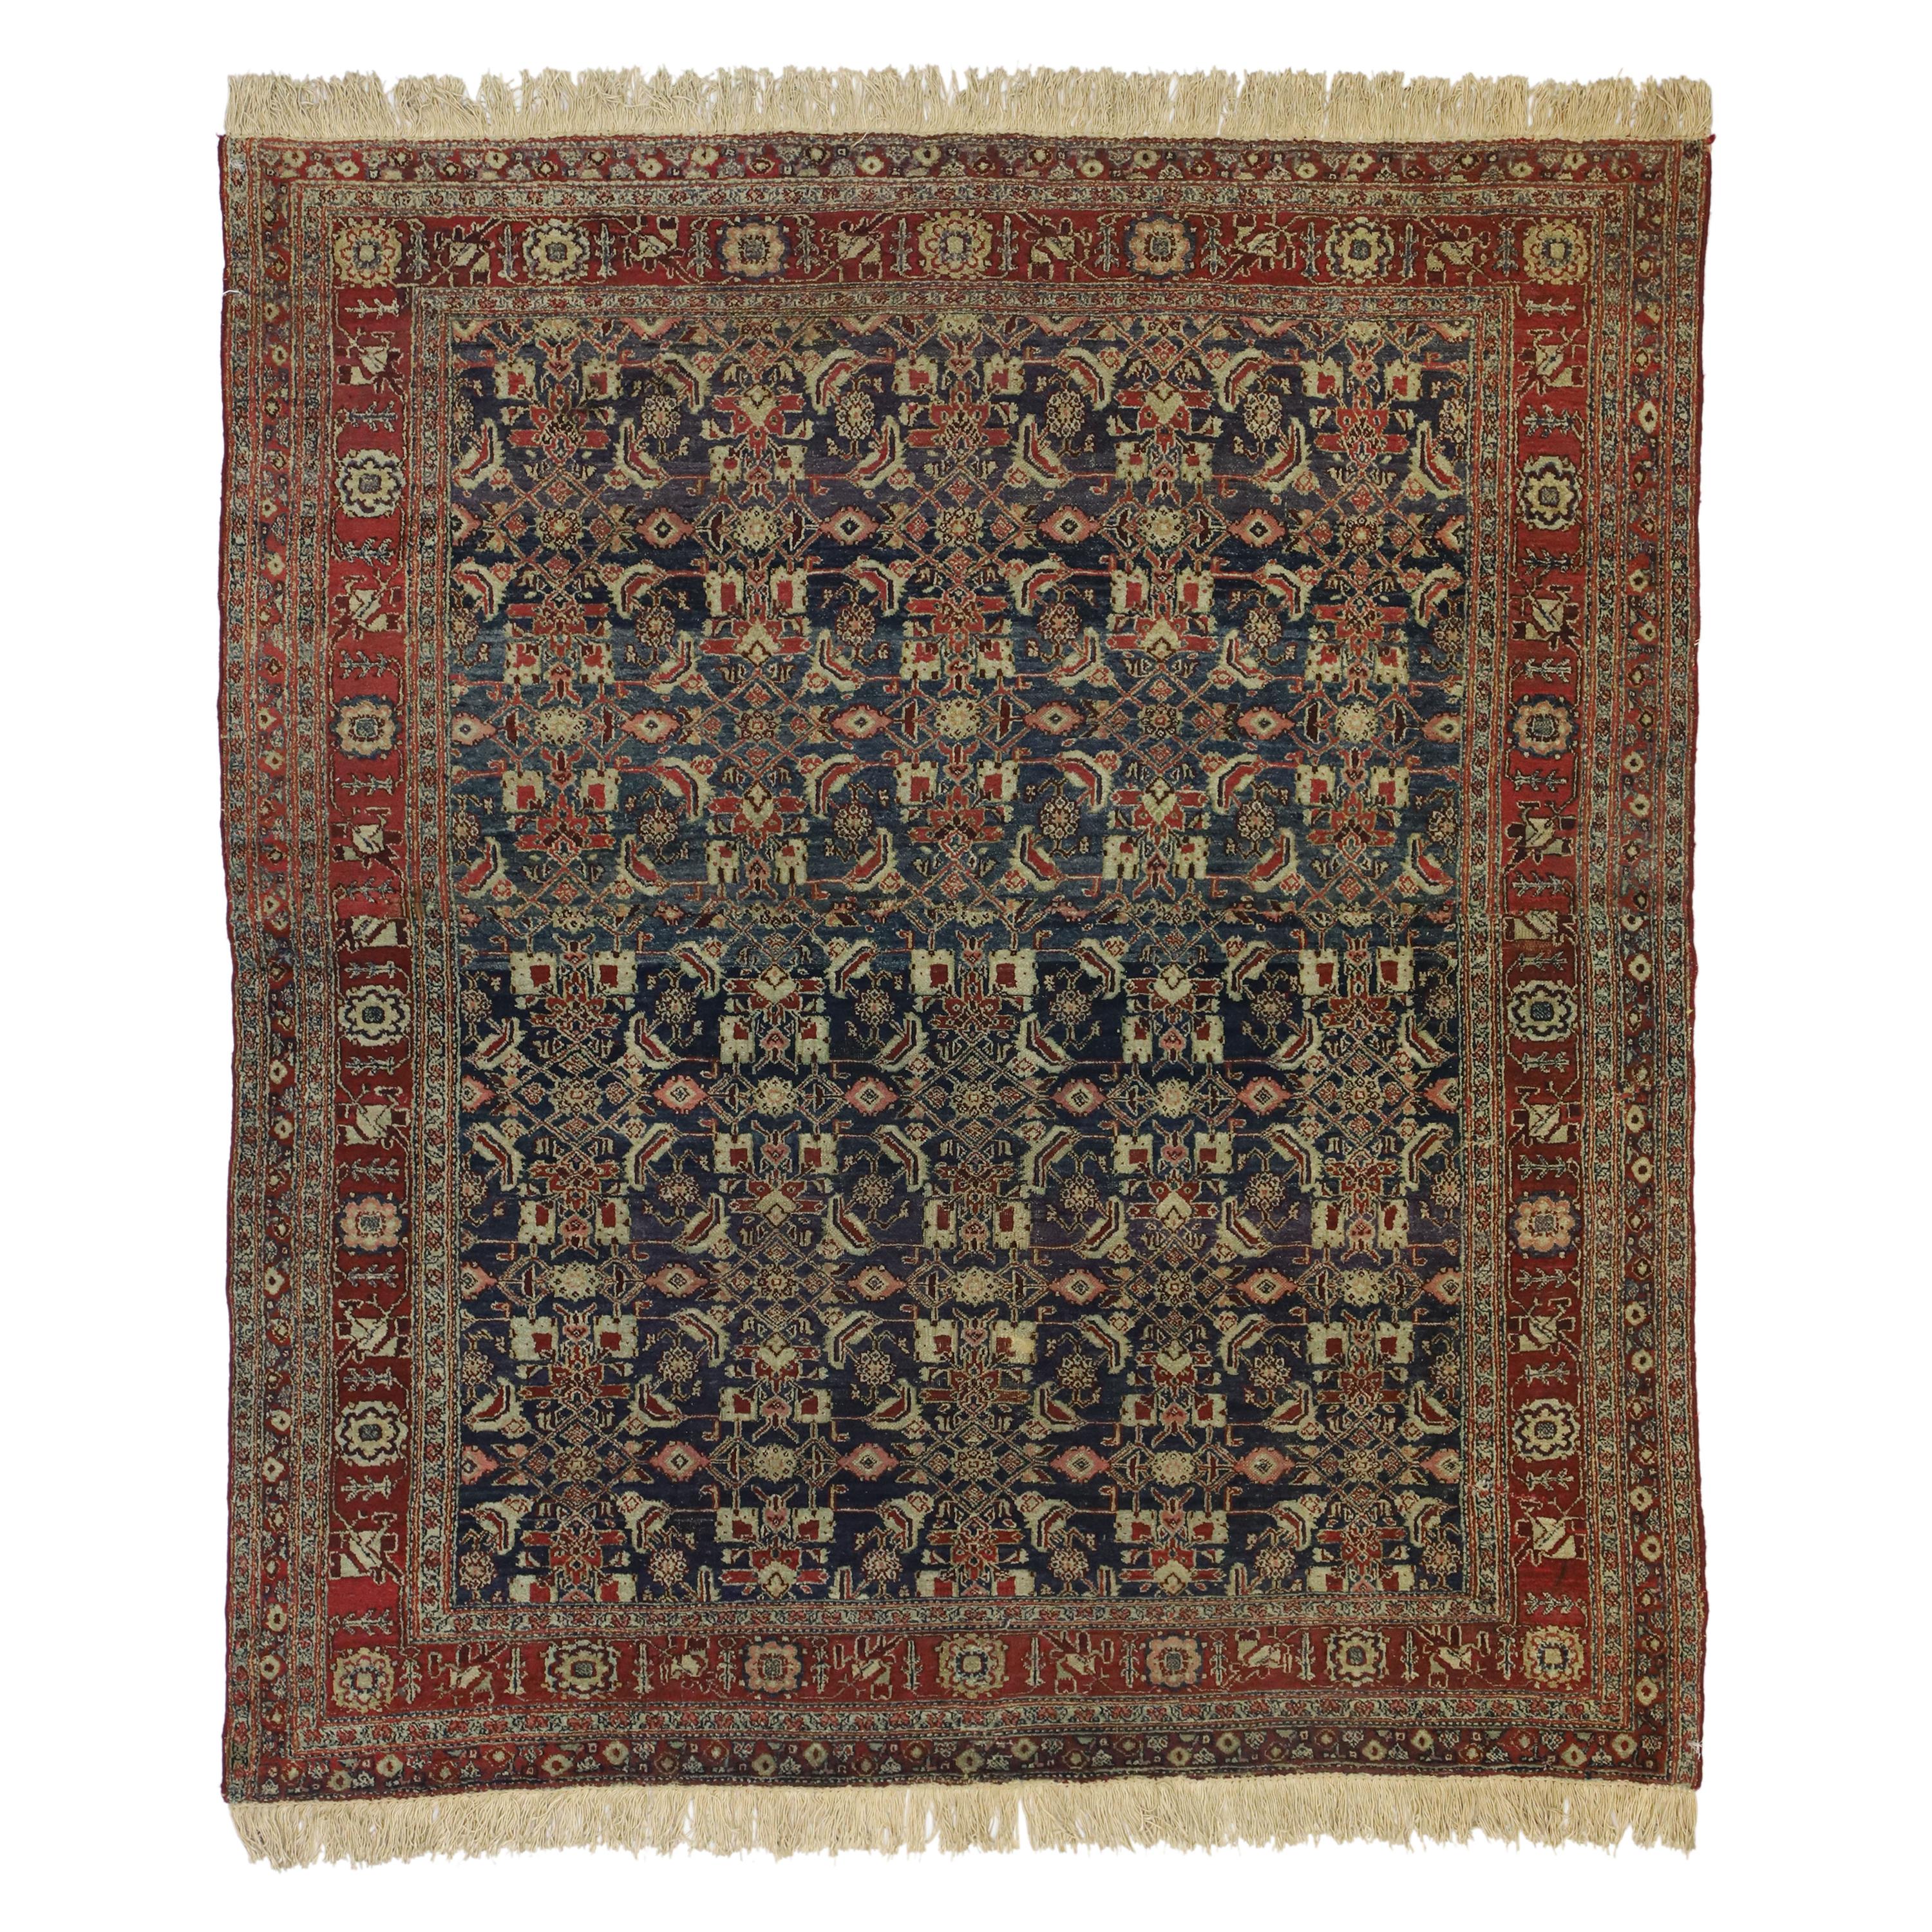 Antiker indischer Teppich im traditionellen viktorianischen Stil